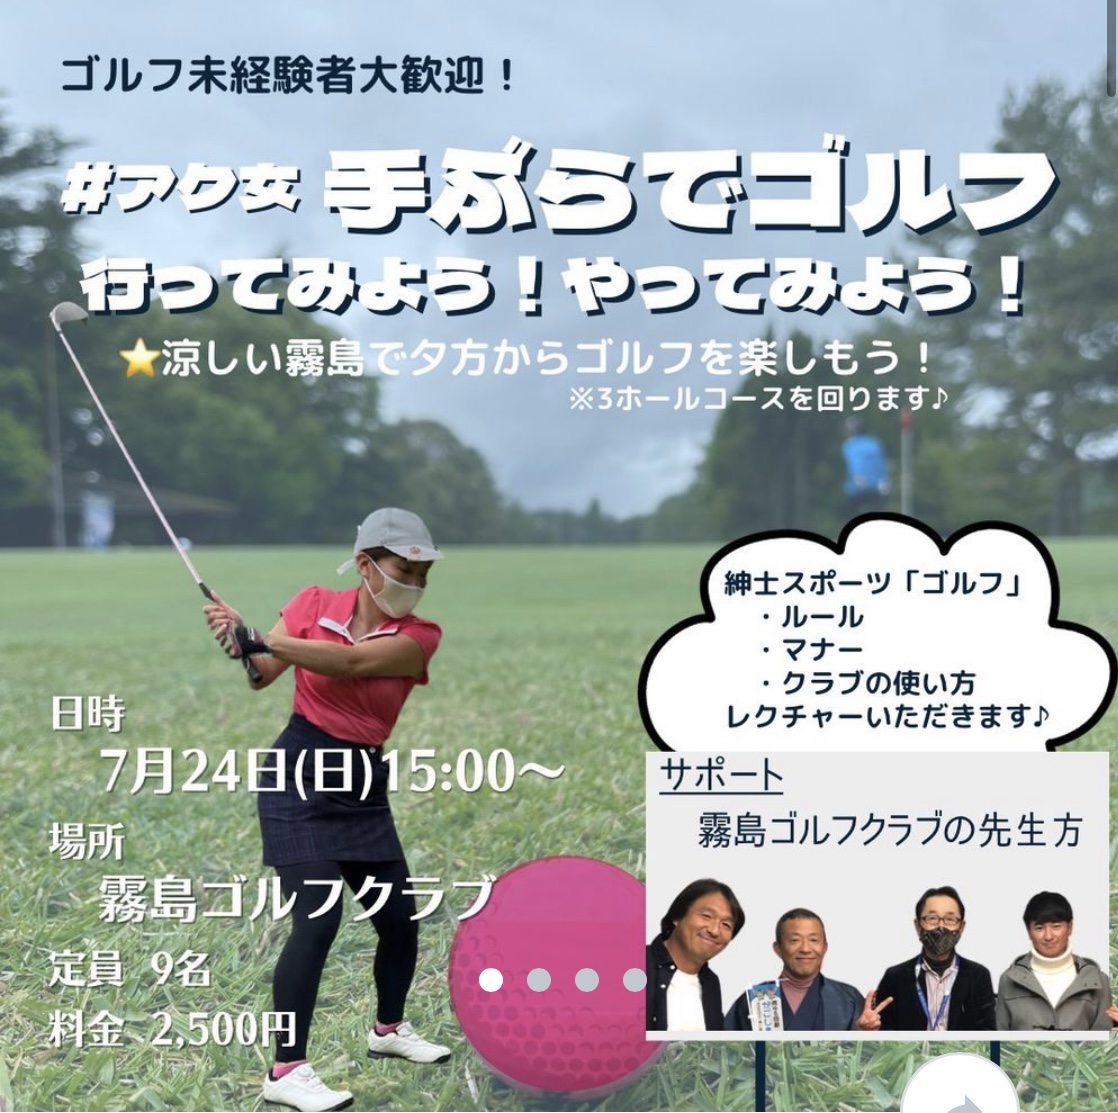 Wroks Golf☆レディース☆ゴルフクラブセット☆大人女子ゴルフ